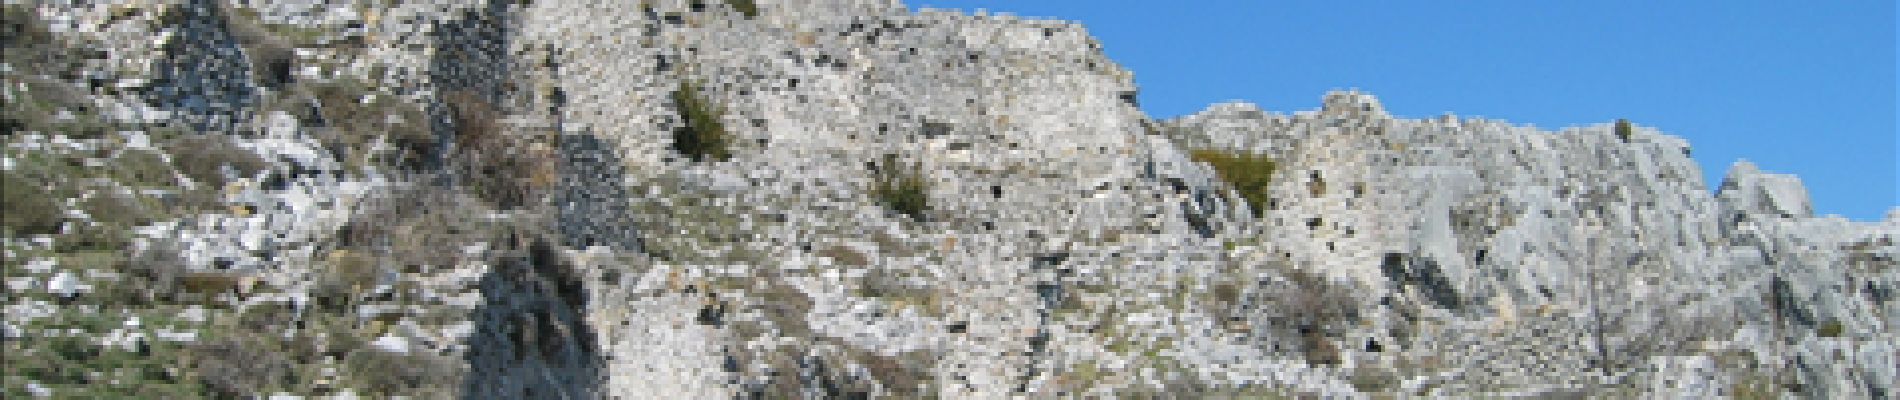 POI Duranus - Ruines RocaSparviera - Photo